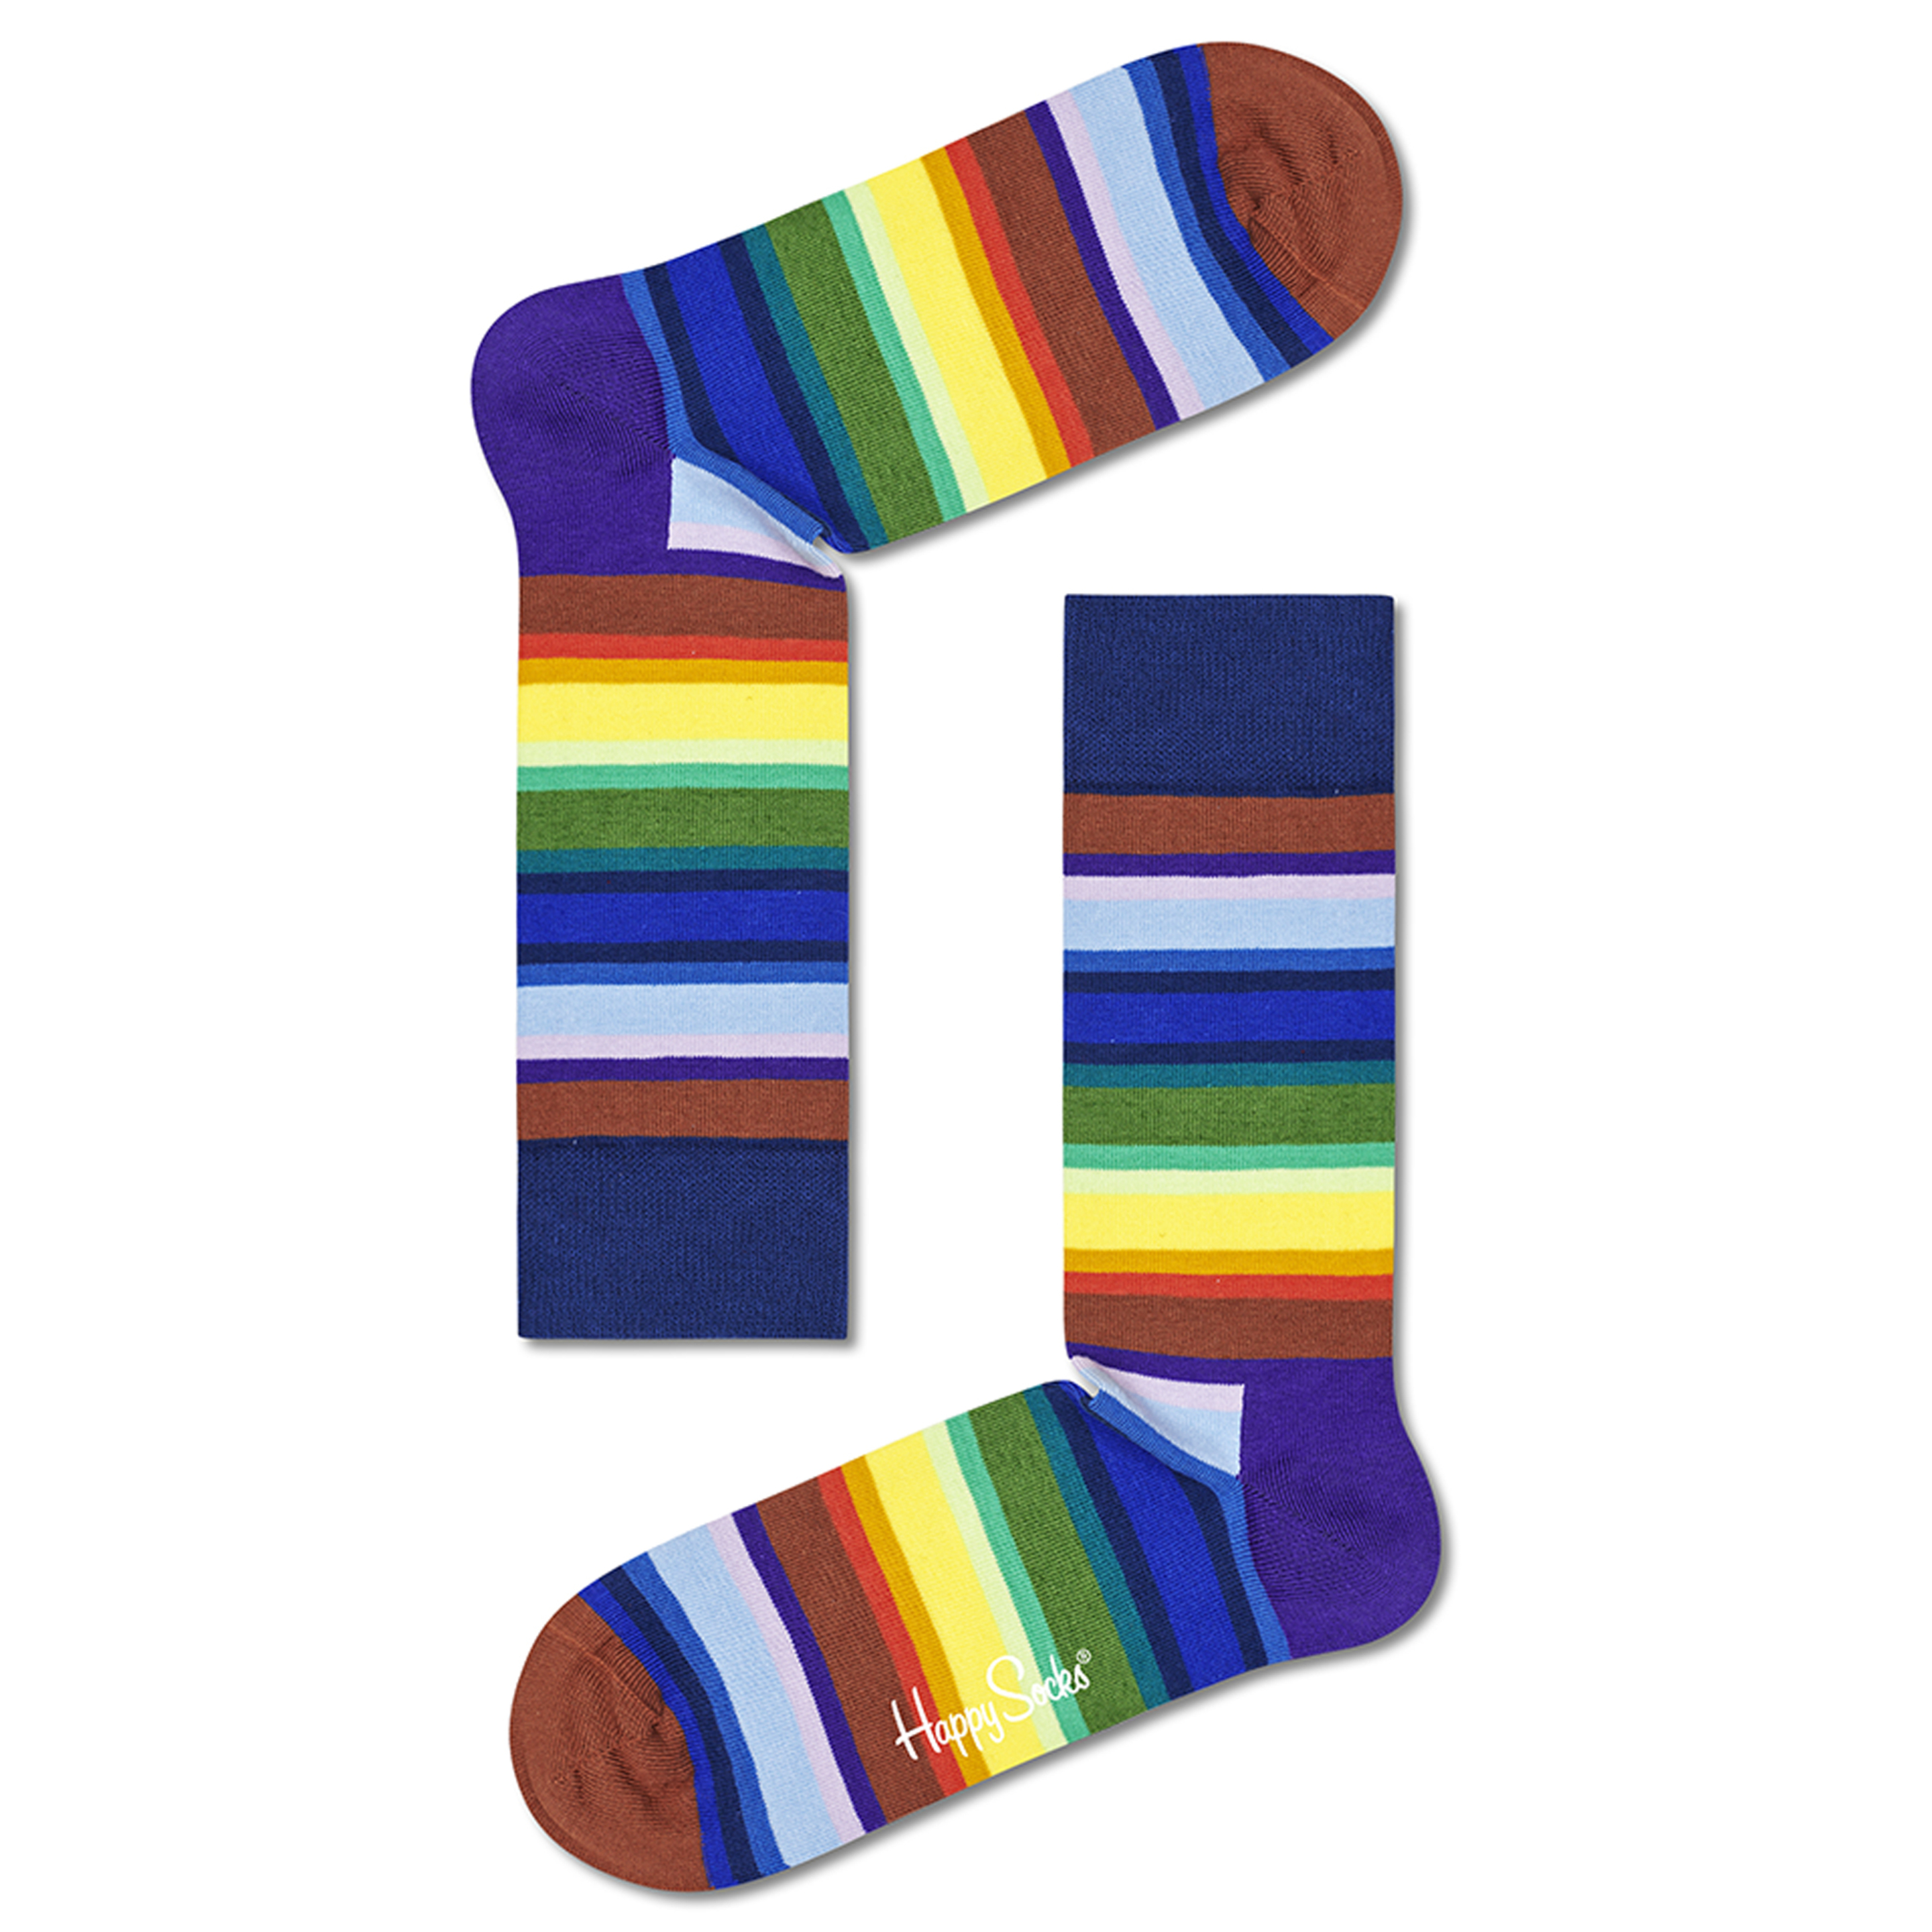 Meias Happy Socks Coloridos - multicolor - 